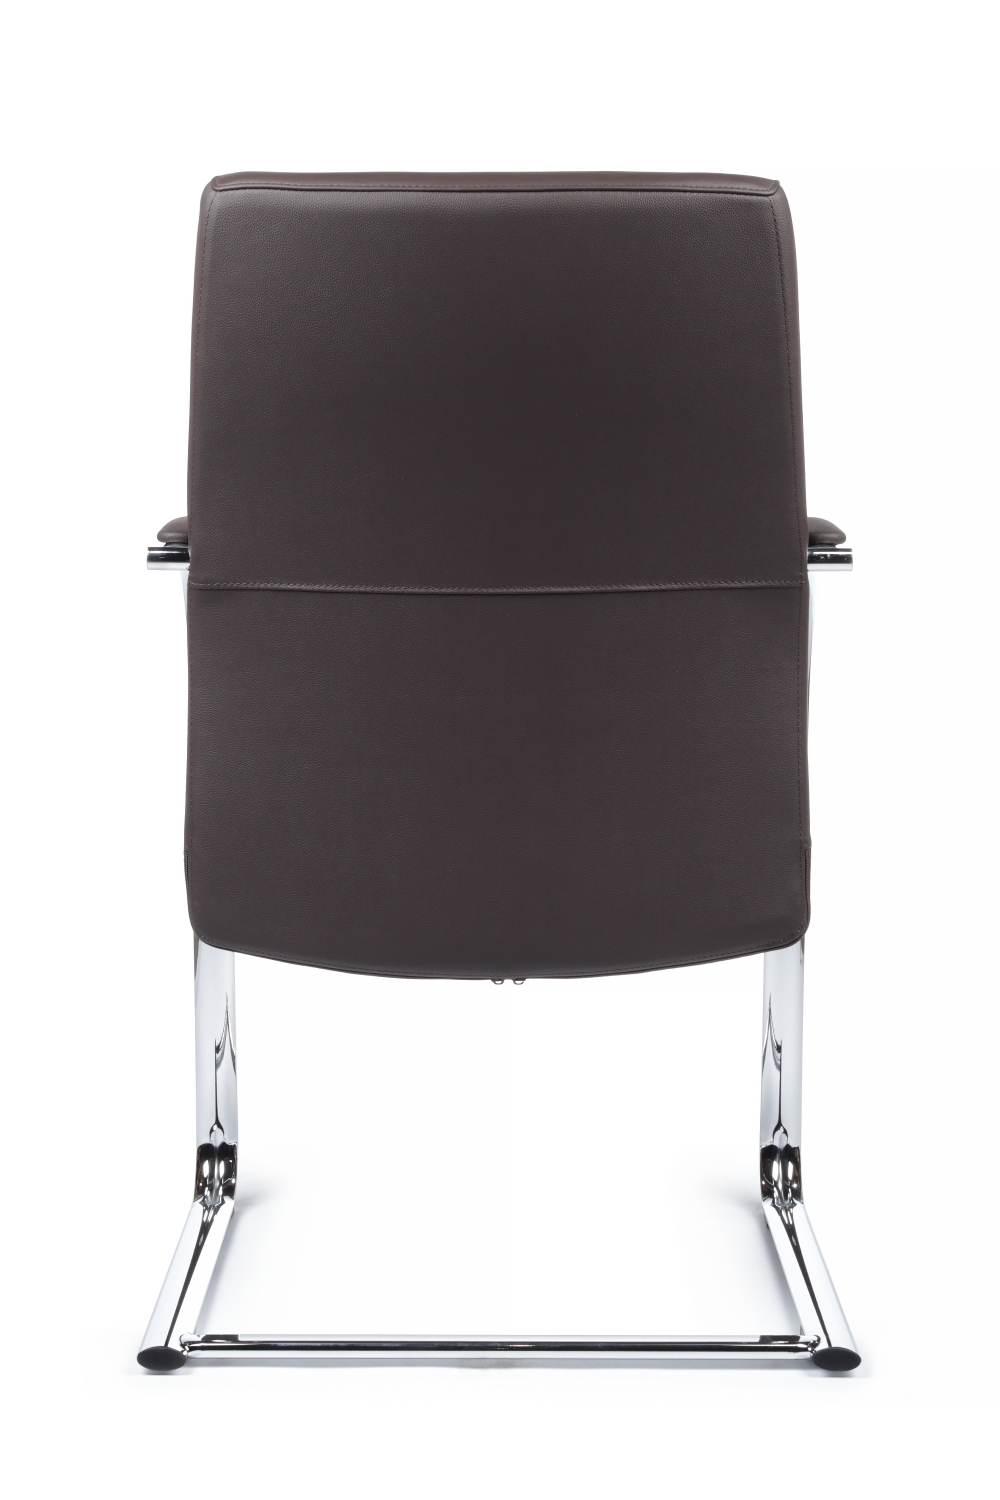 Конференц кресло RIVA DESIGN Gaston-SF 9364 натуральная кожа Темно-коричневый